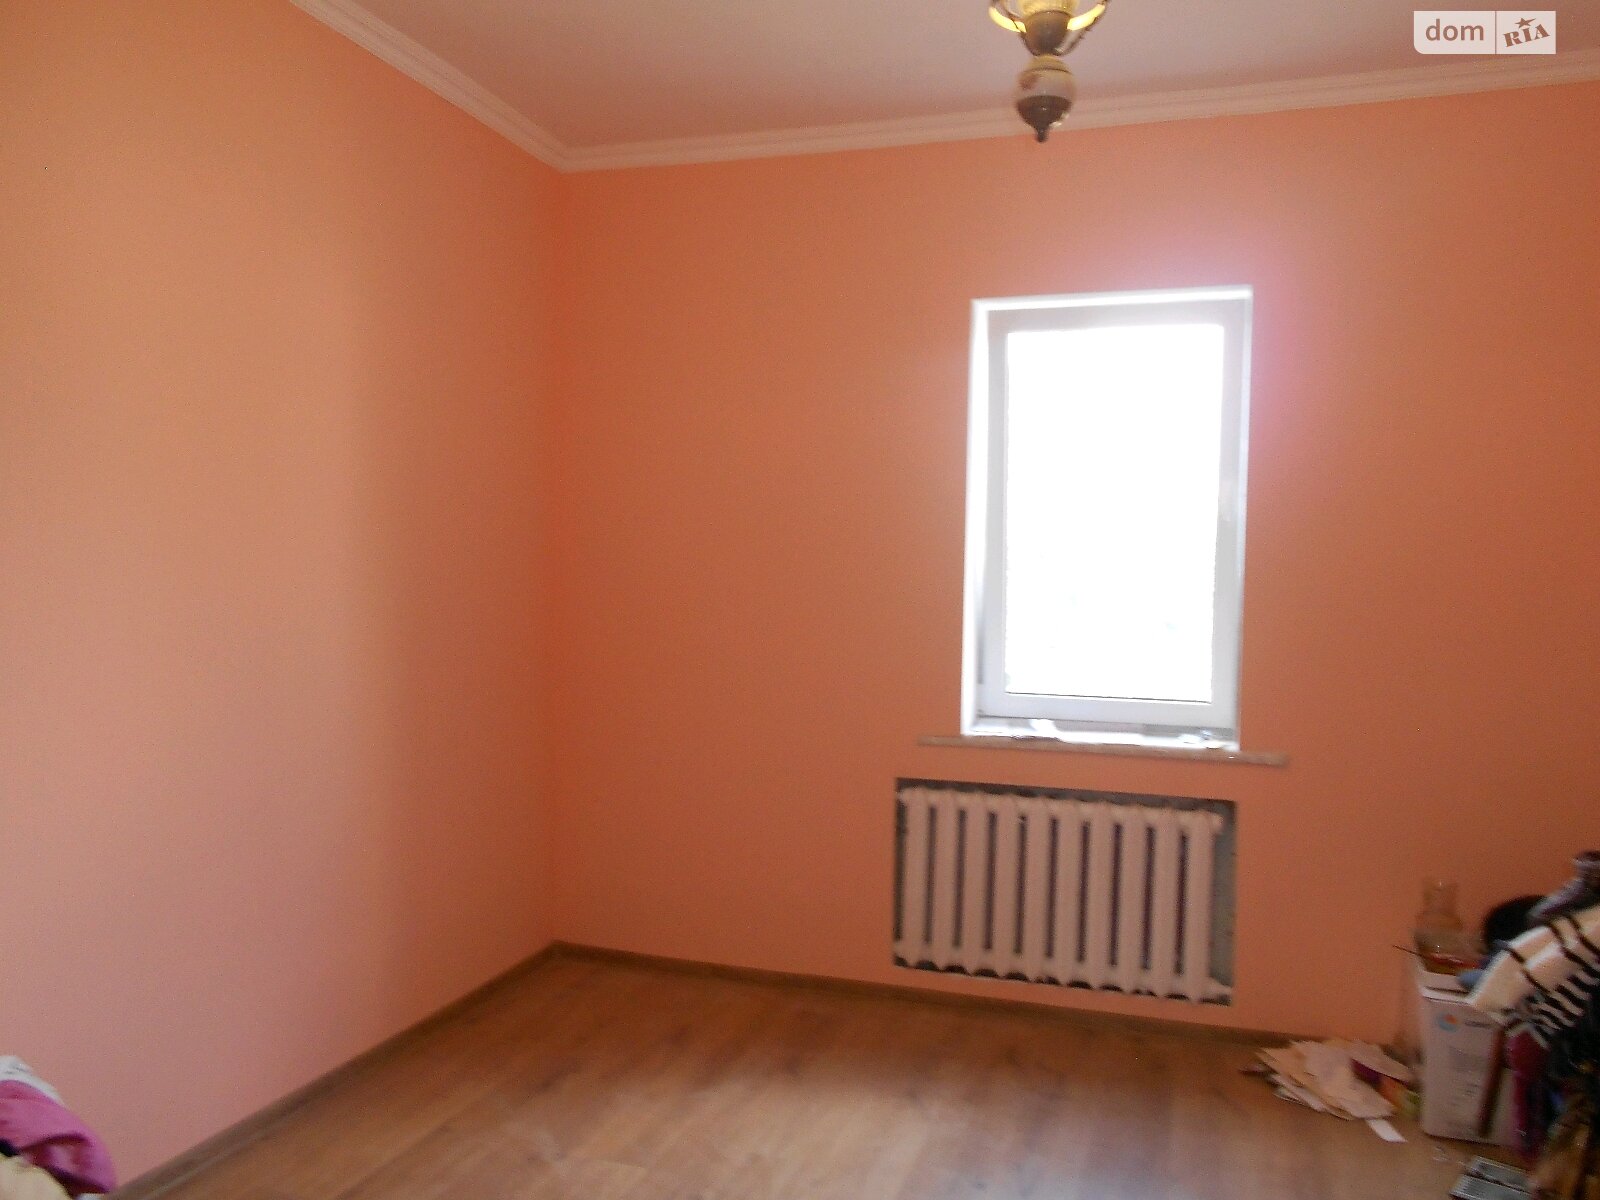 Продажа части дома в Житомире, Радивилівська Піонерська, район Малеванка, 4 комнаты фото 1